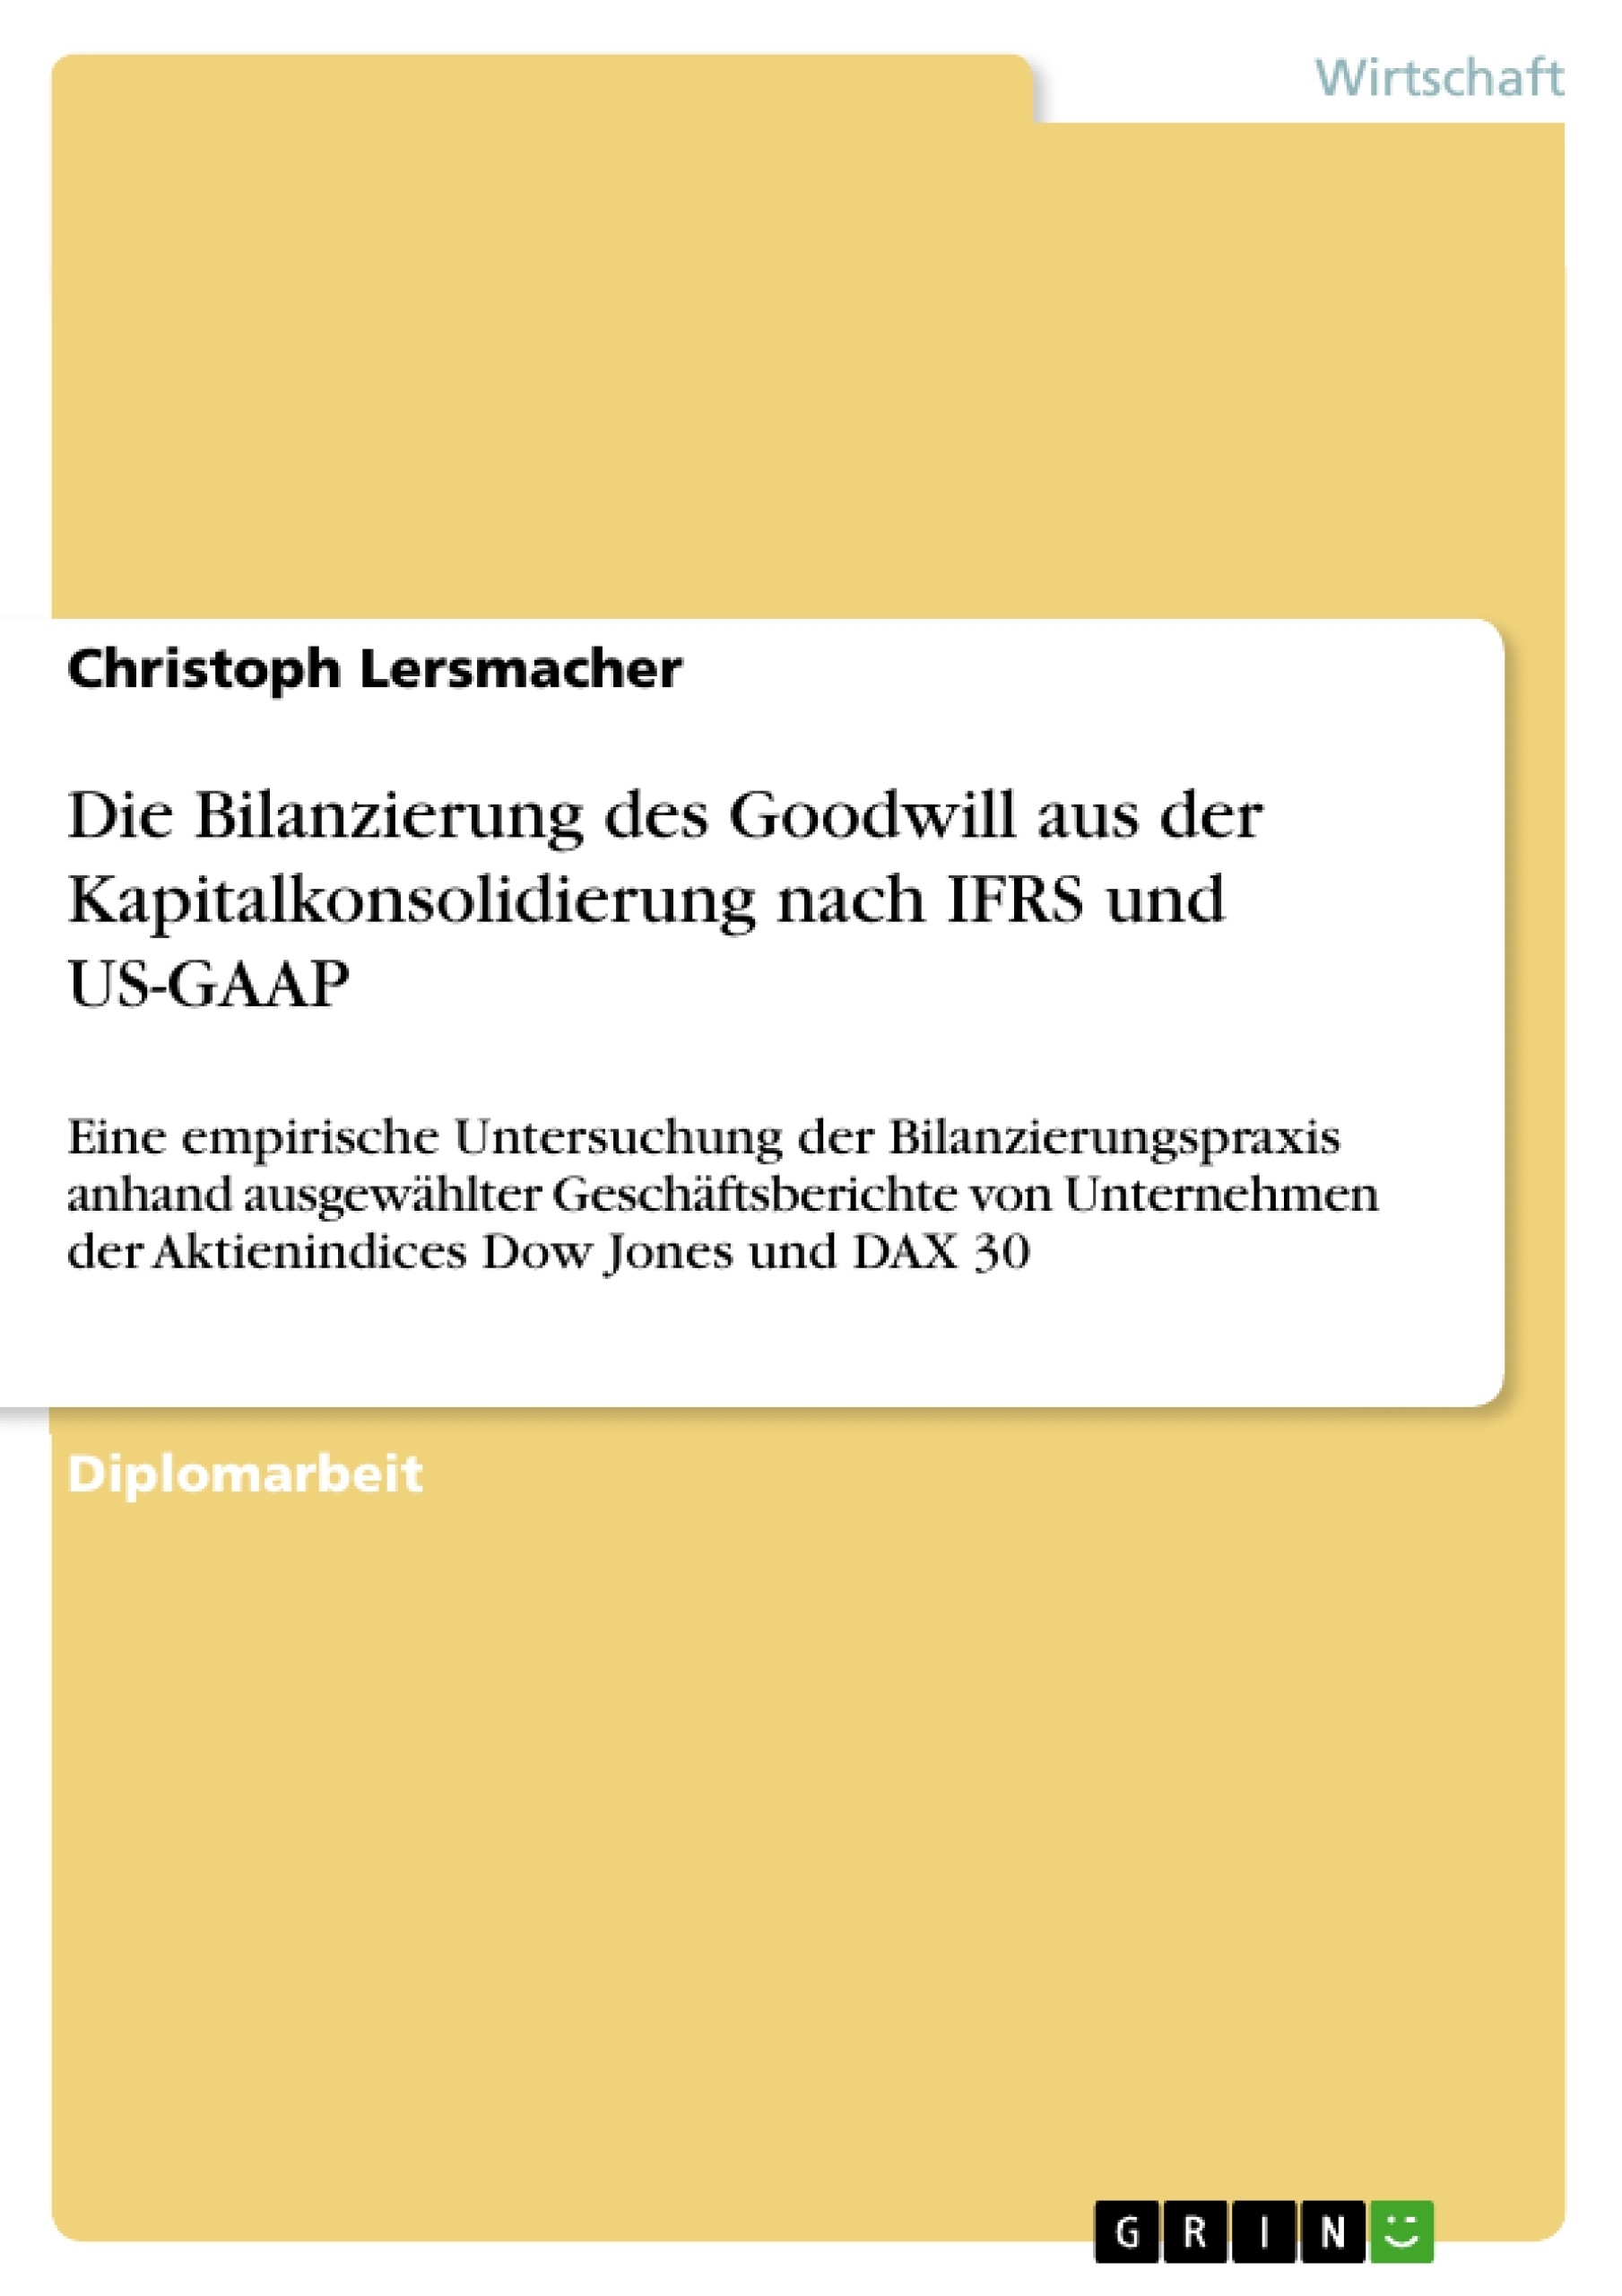 Titel: Die Bilanzierung des Goodwill aus der Kapitalkonsolidierung nach IFRS und US-GAAP